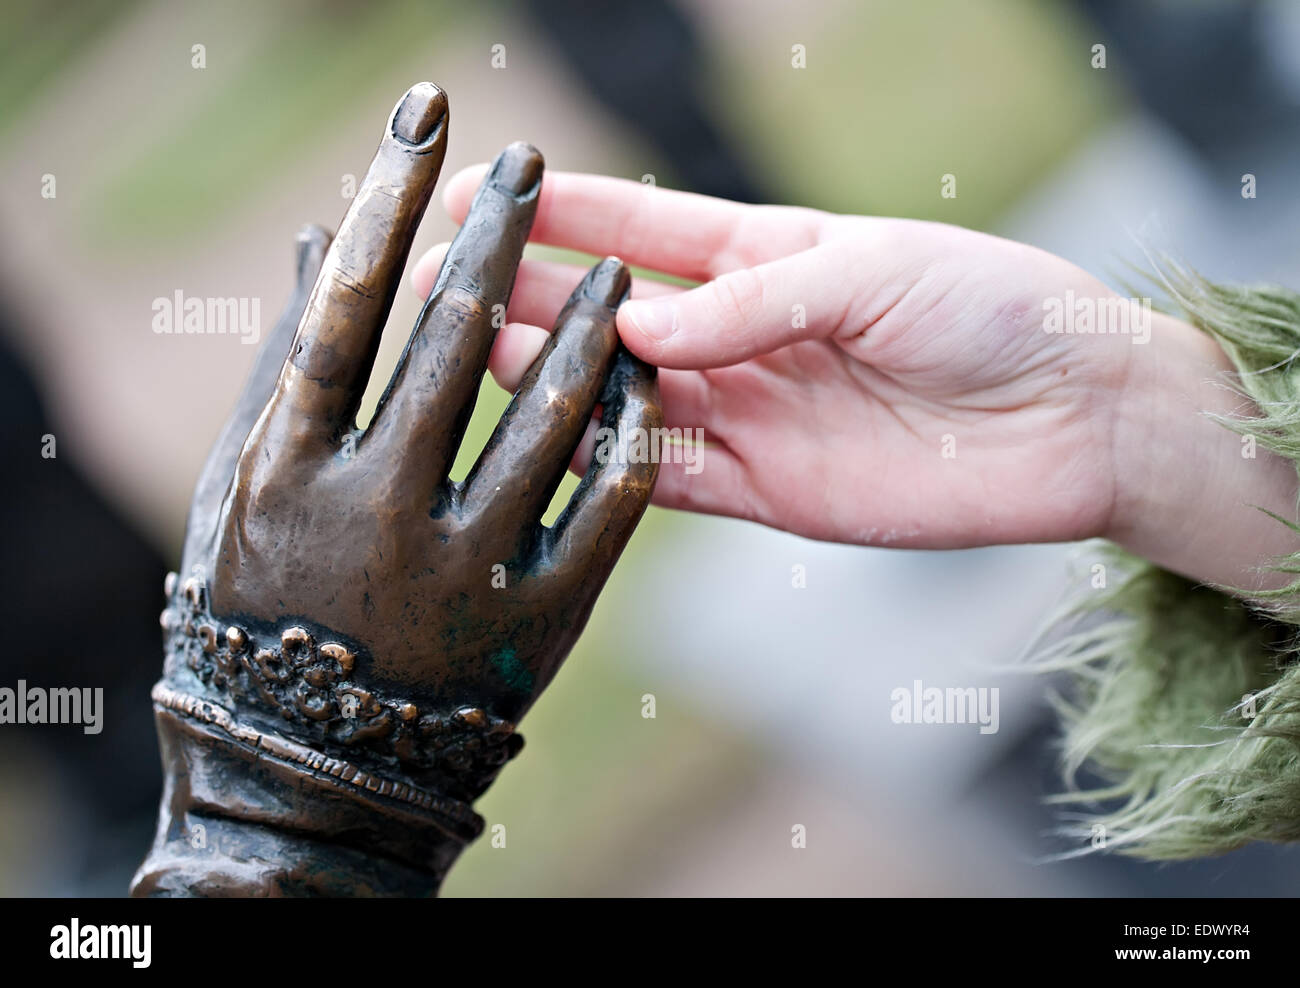 Toque acercamiento de las dos manos: estatua de metal y derechos niño Foto de stock